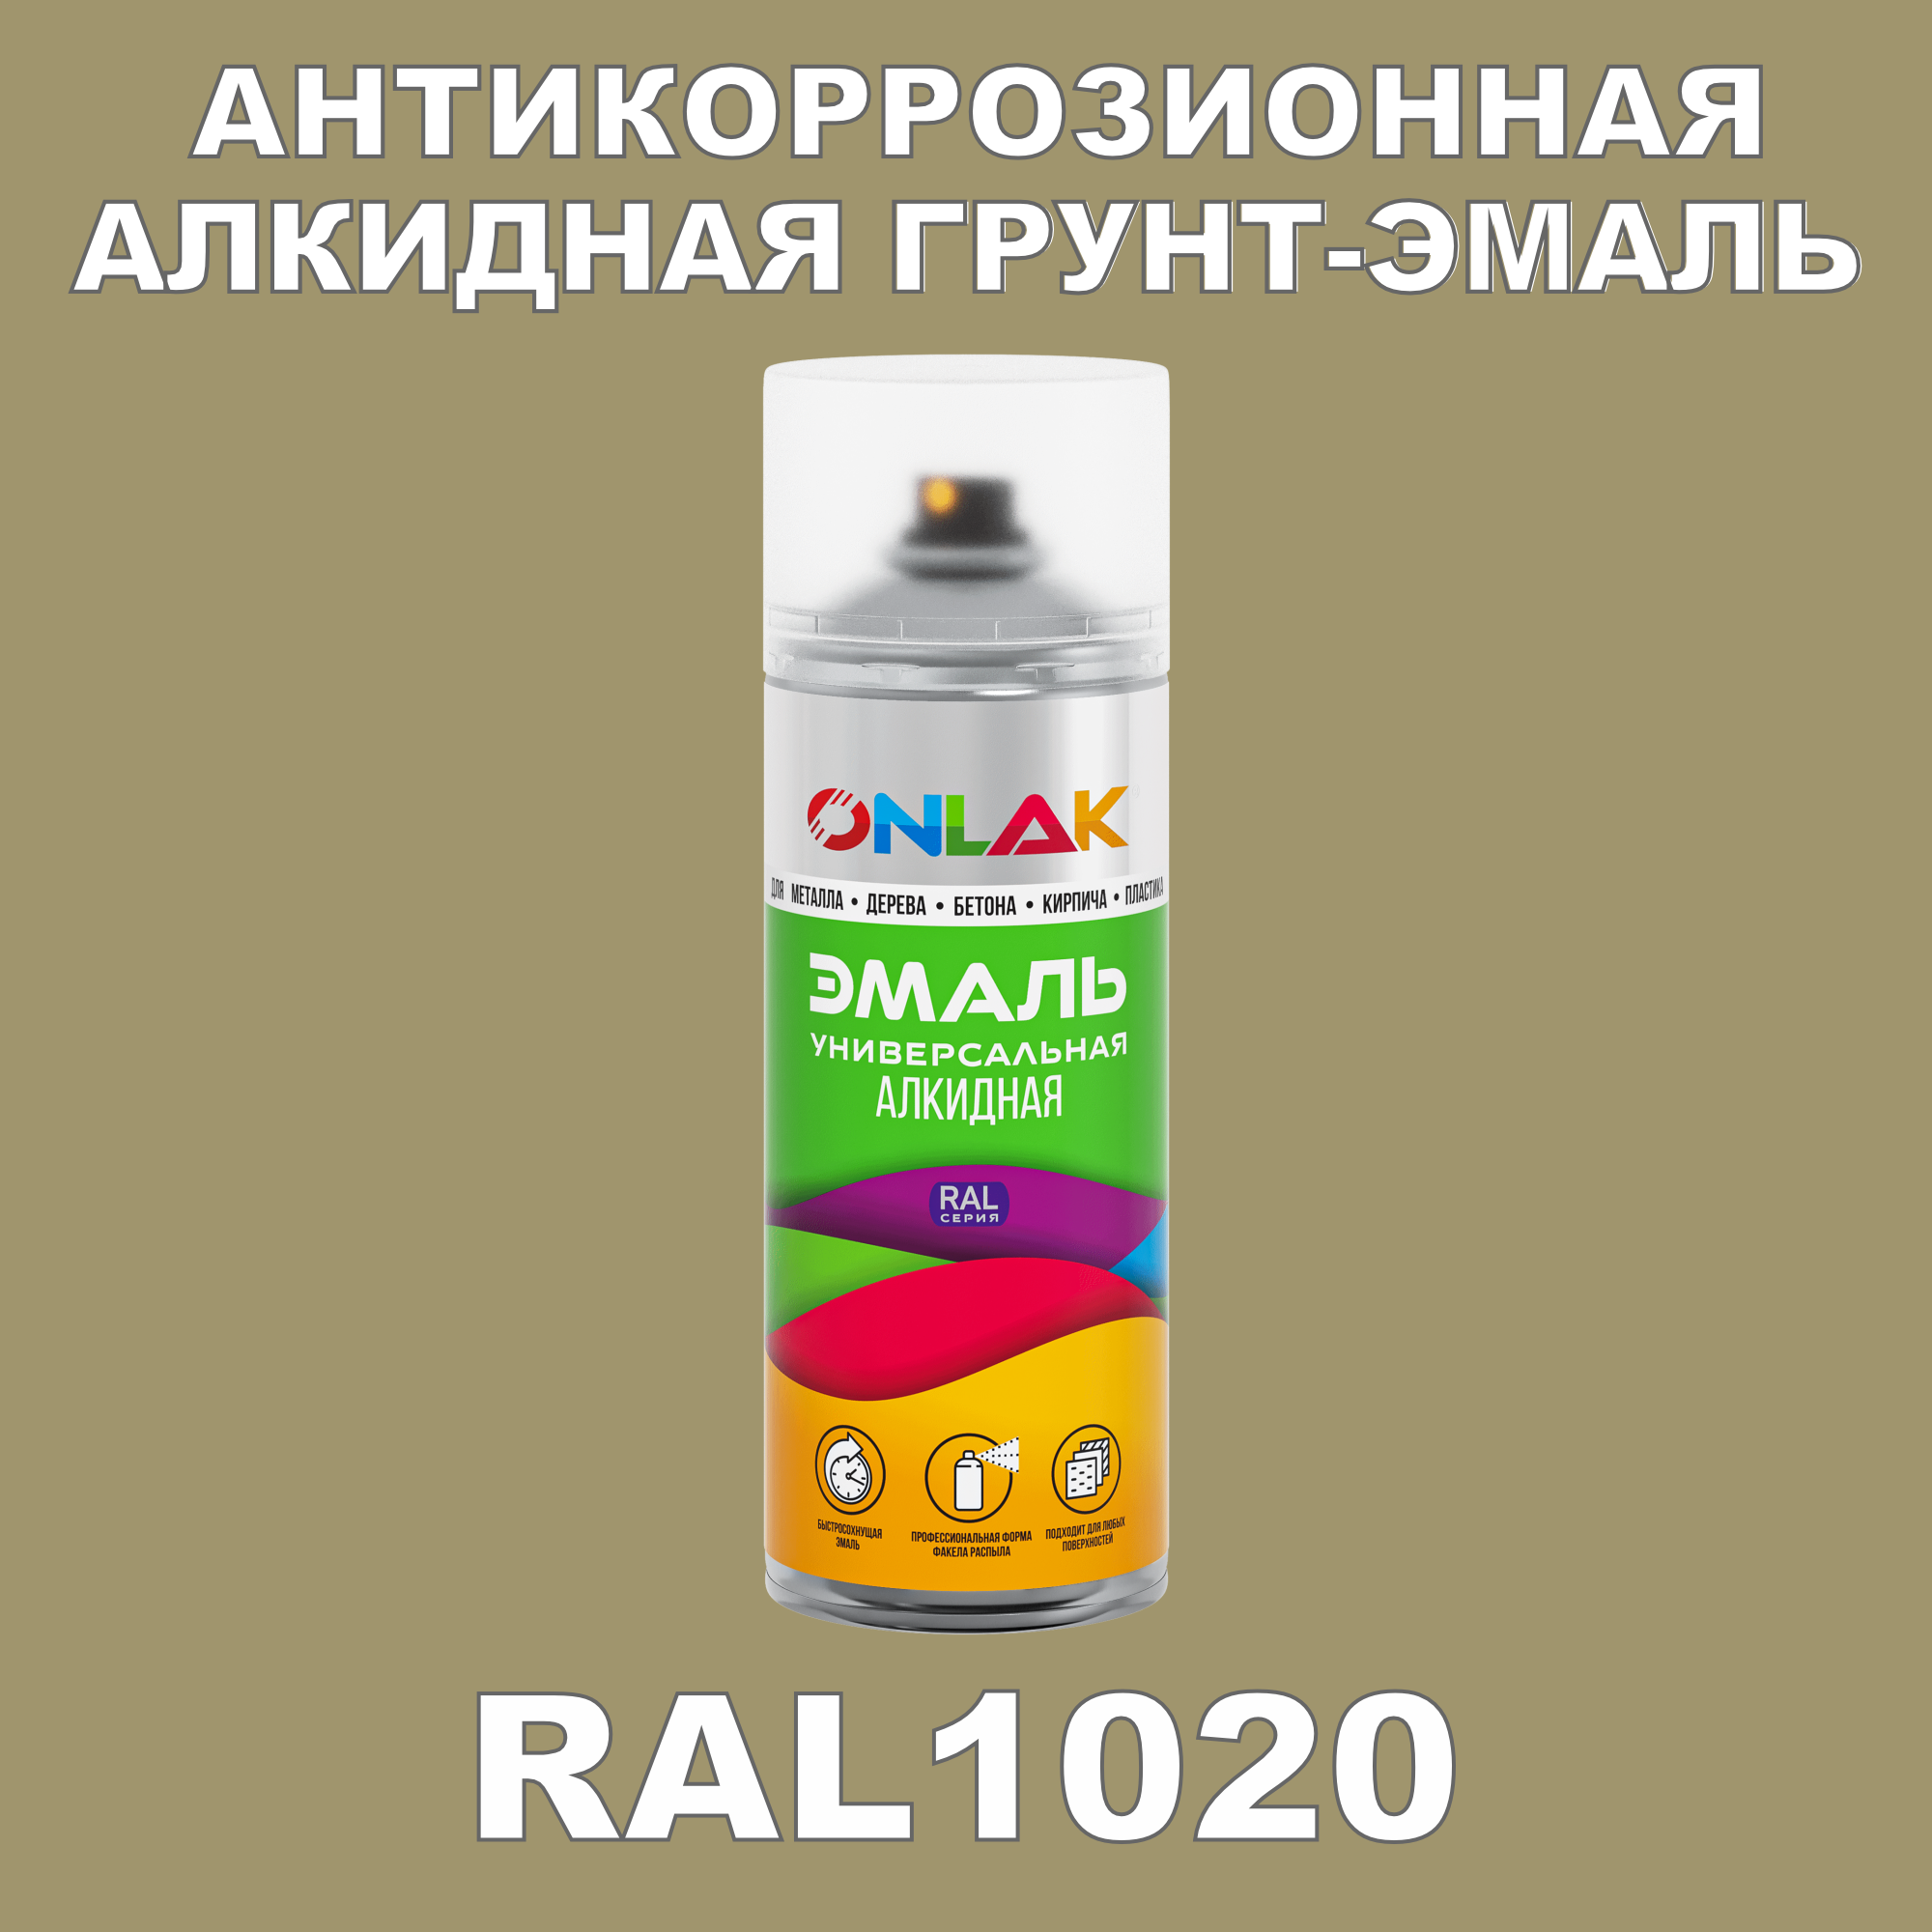 Антикоррозионная грунт-эмаль ONLAK RAL1020 полуматовая для металла и защиты от ржавчины